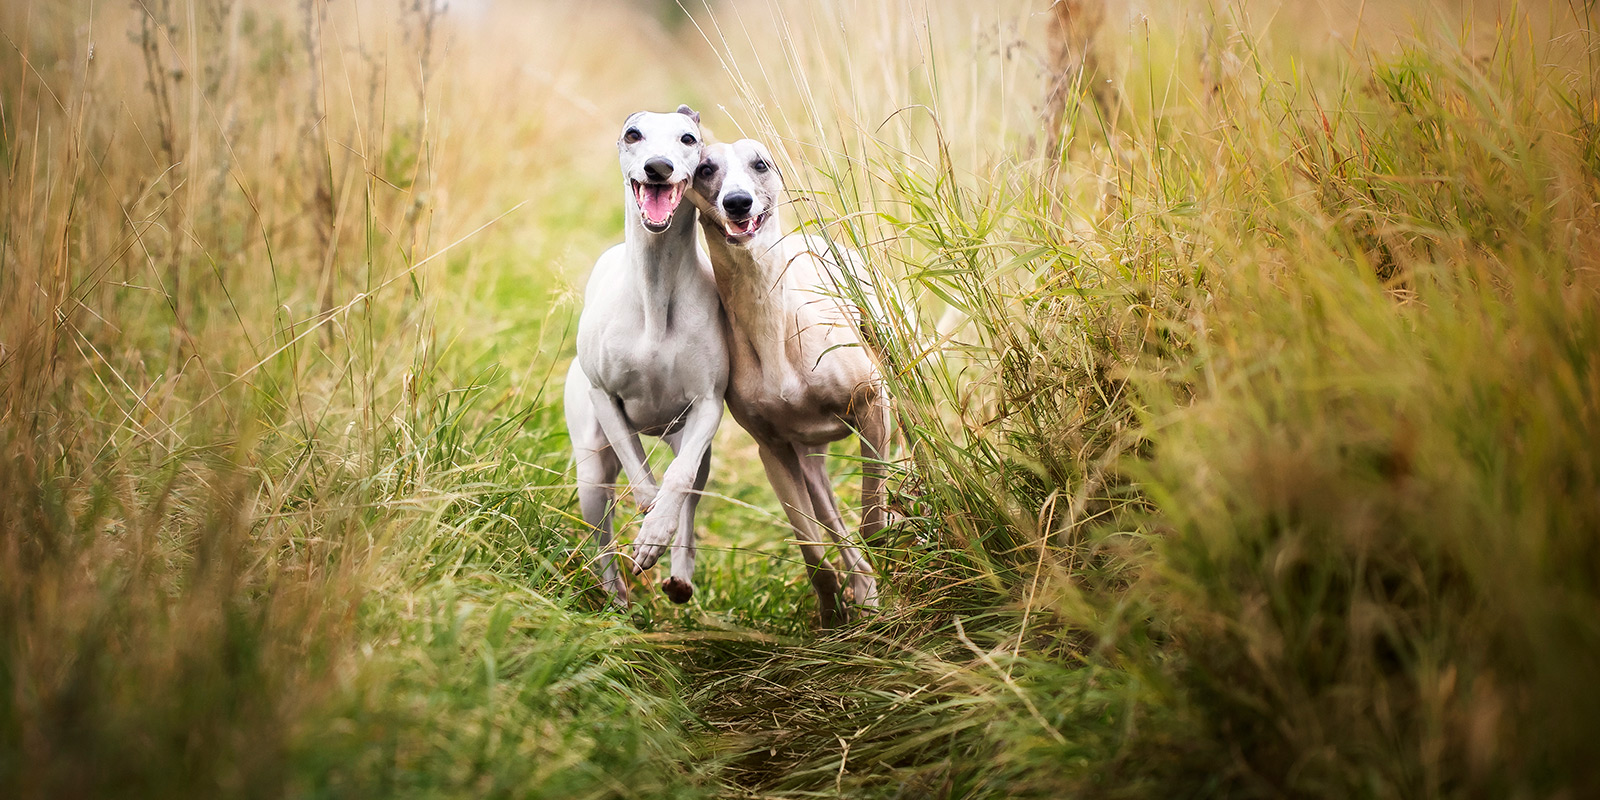 Perros galgos: 10 curiosidades sobre esta raza